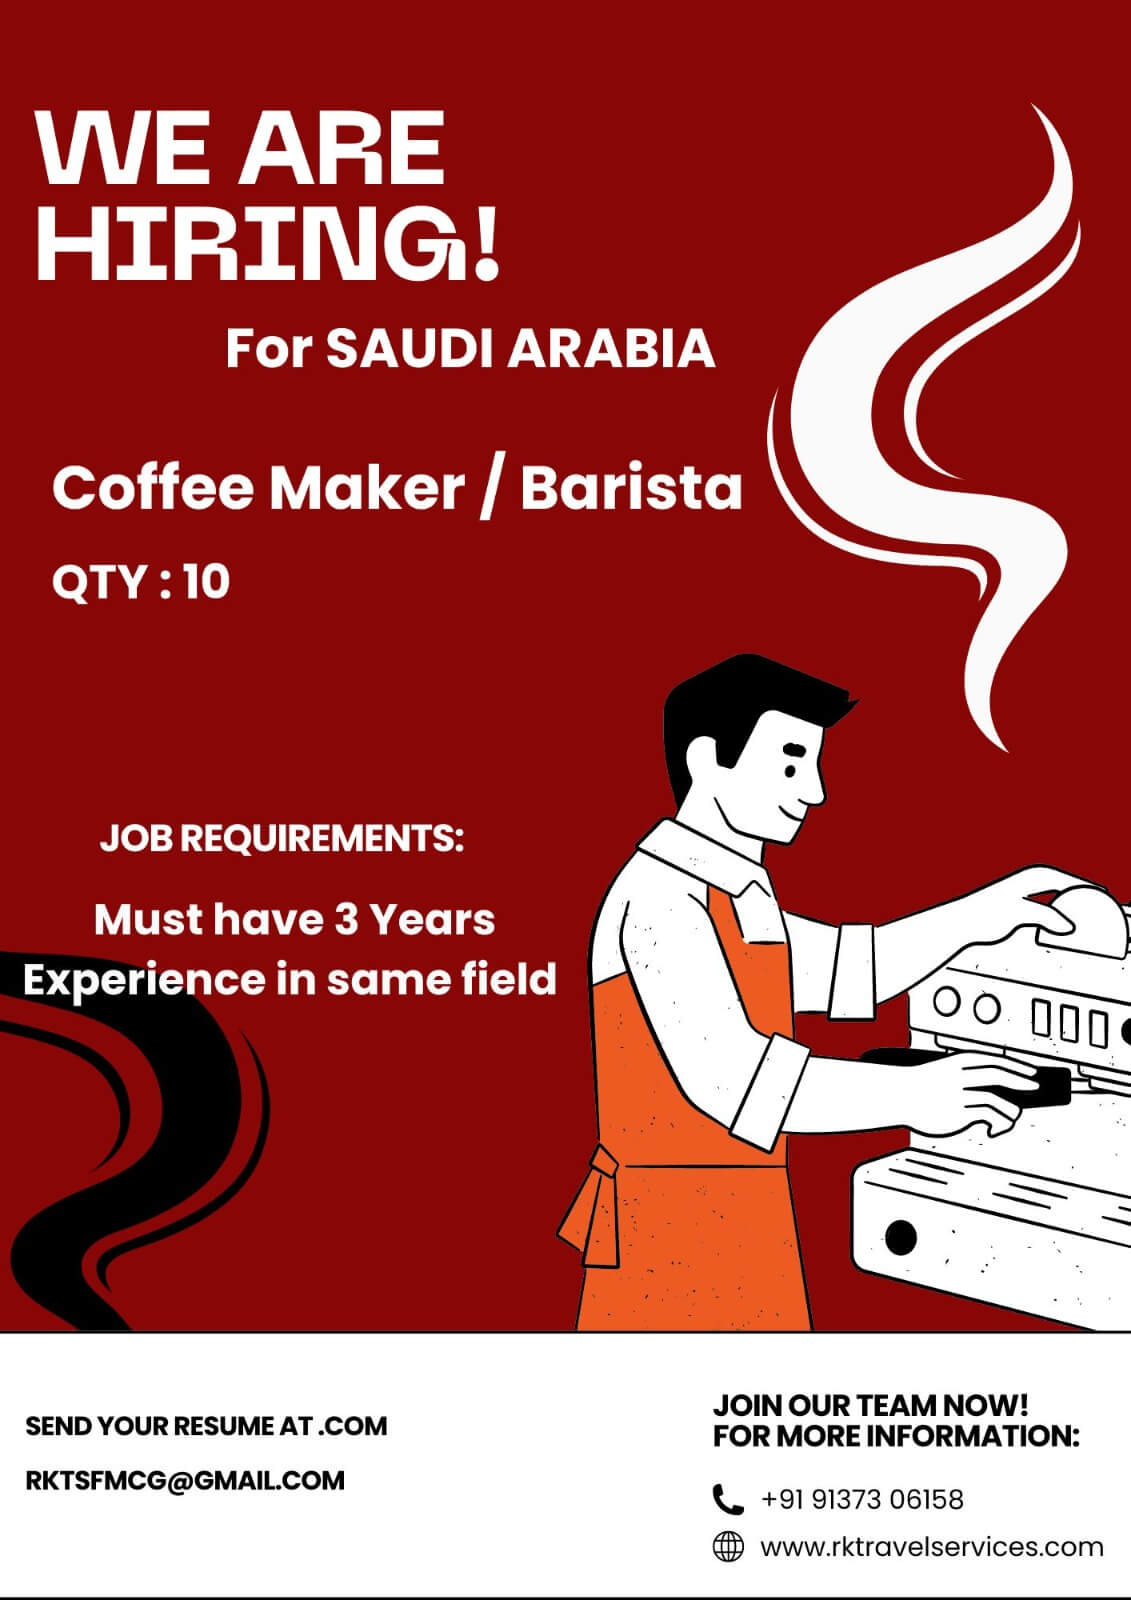 For Leading café in Saudi Arabia